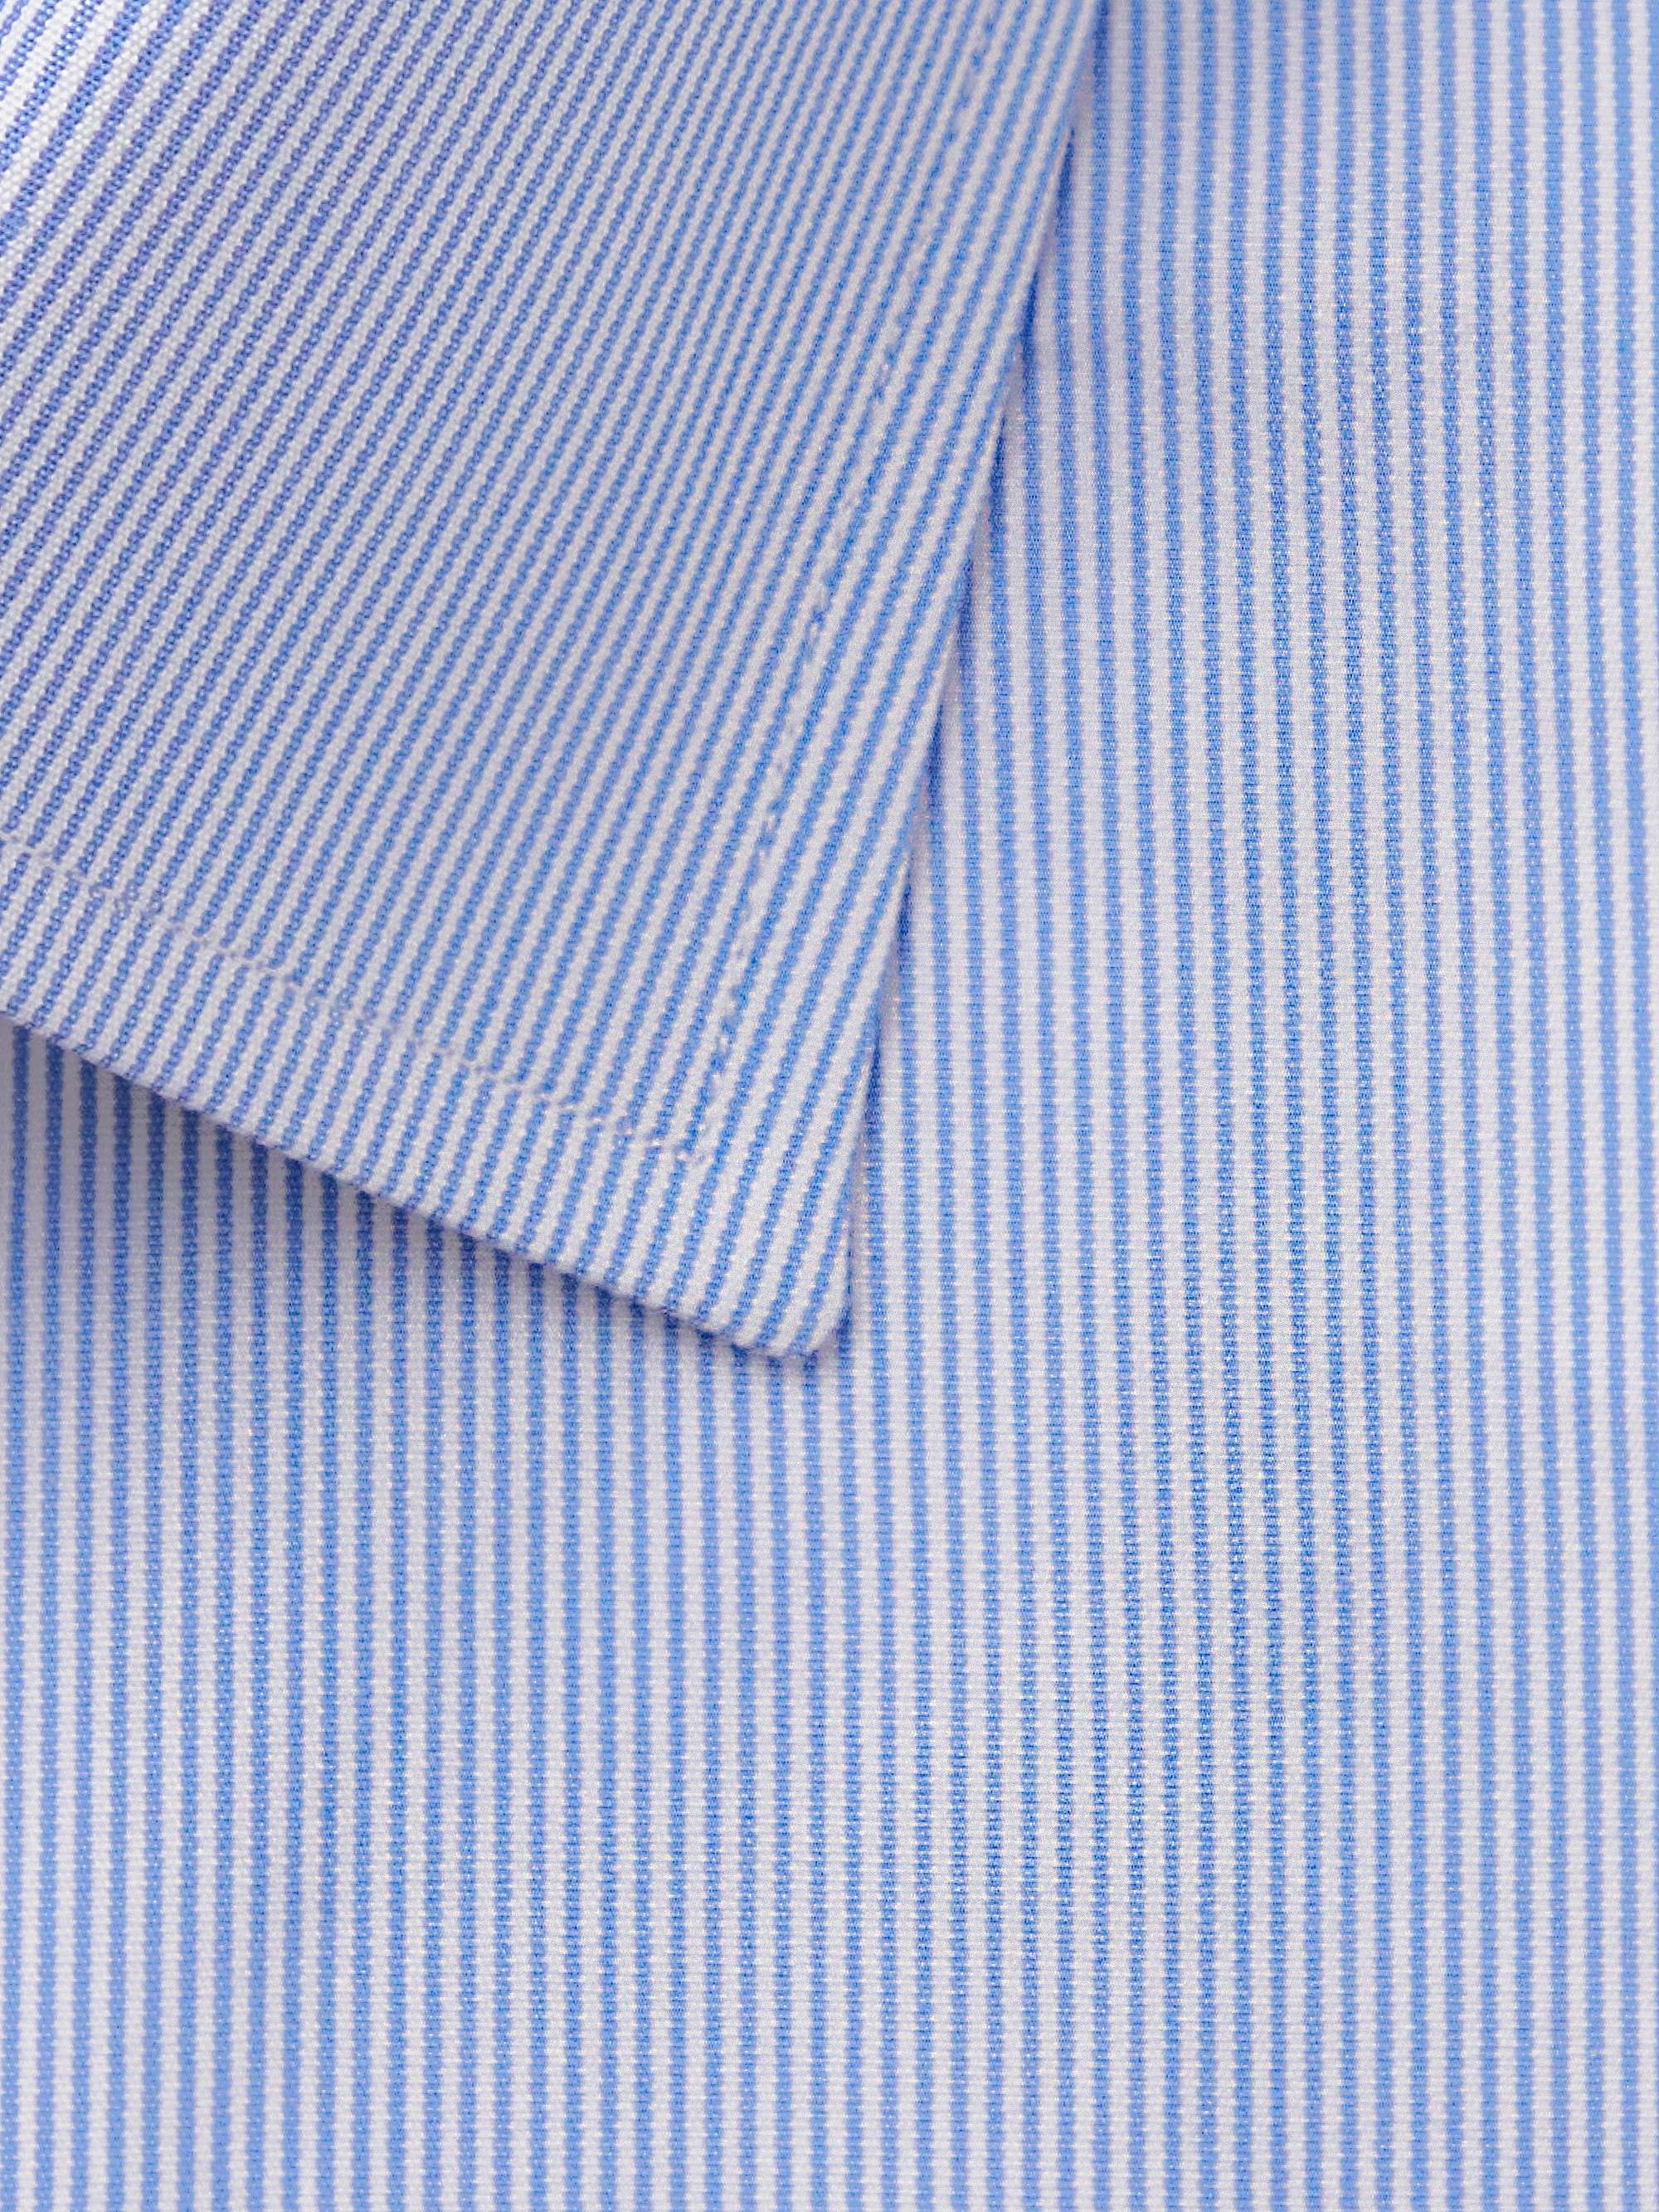 gået vanvittigt amme Uenighed TOM FORD Striped Cotton-Poplin Shirt for Men | MR PORTER